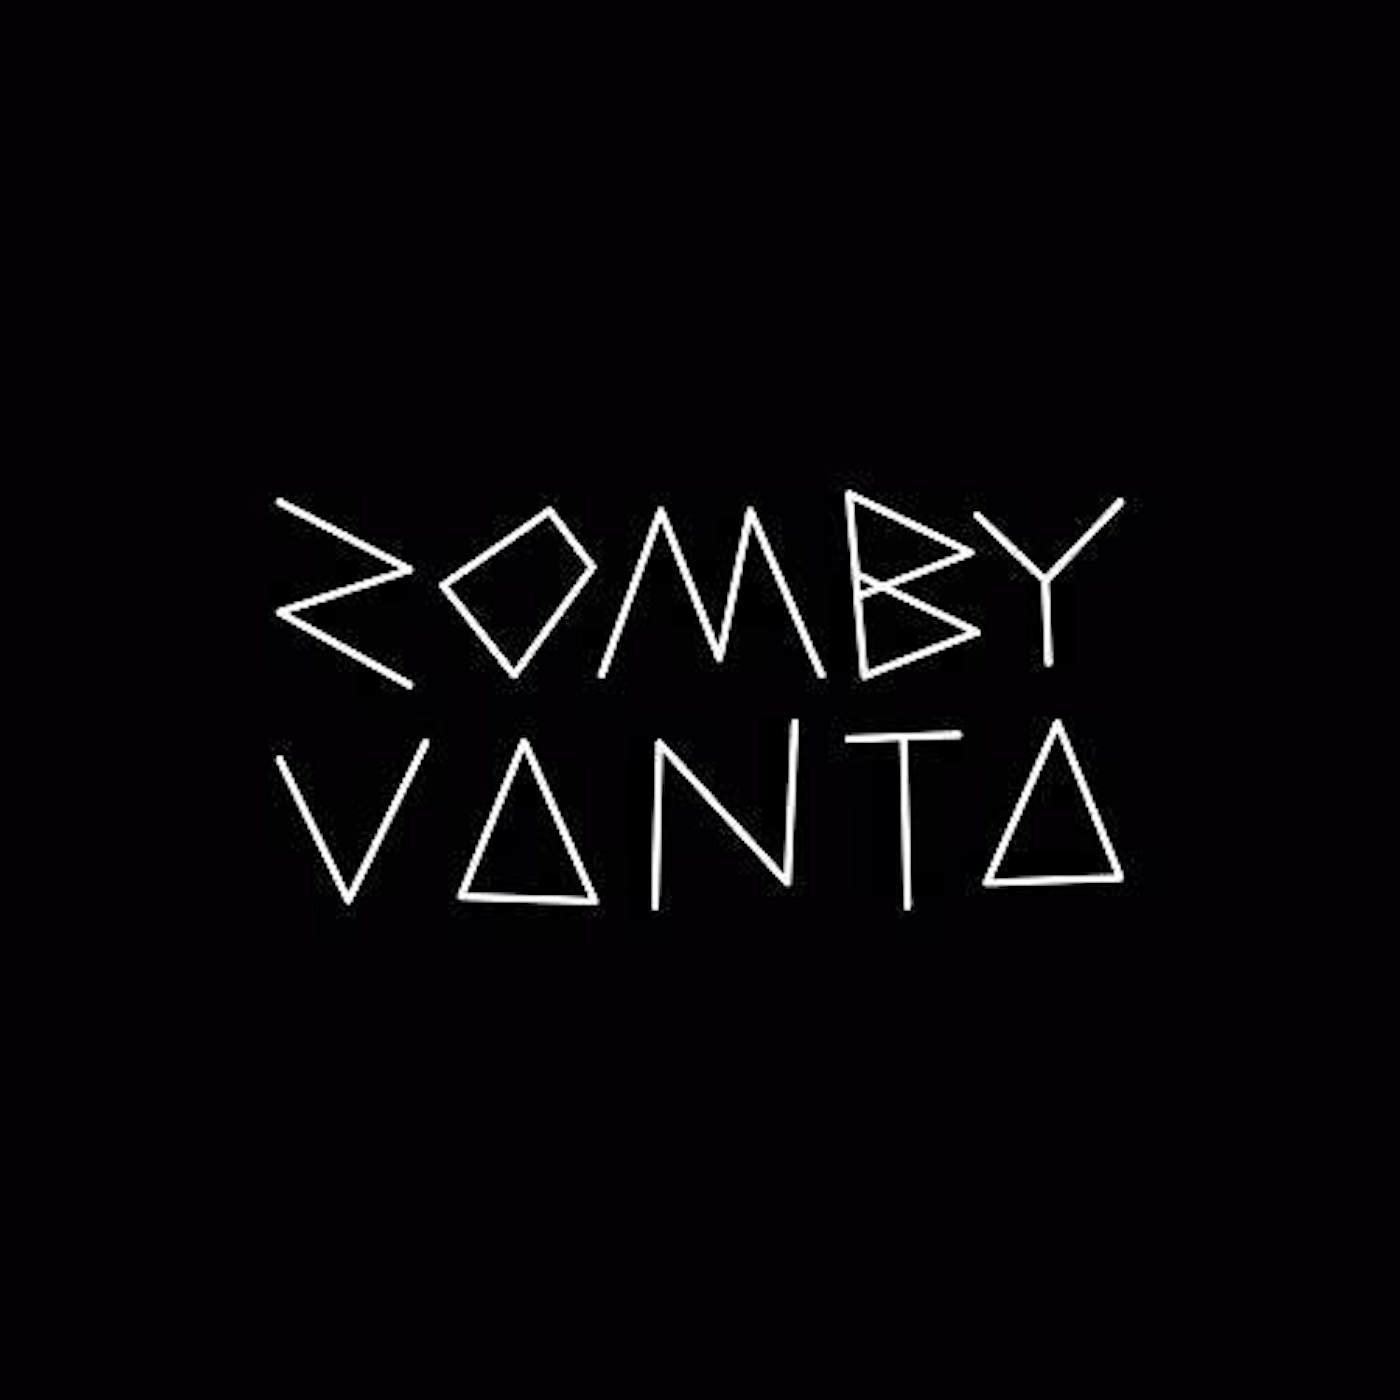 Zomby Vanta Vinyl Record